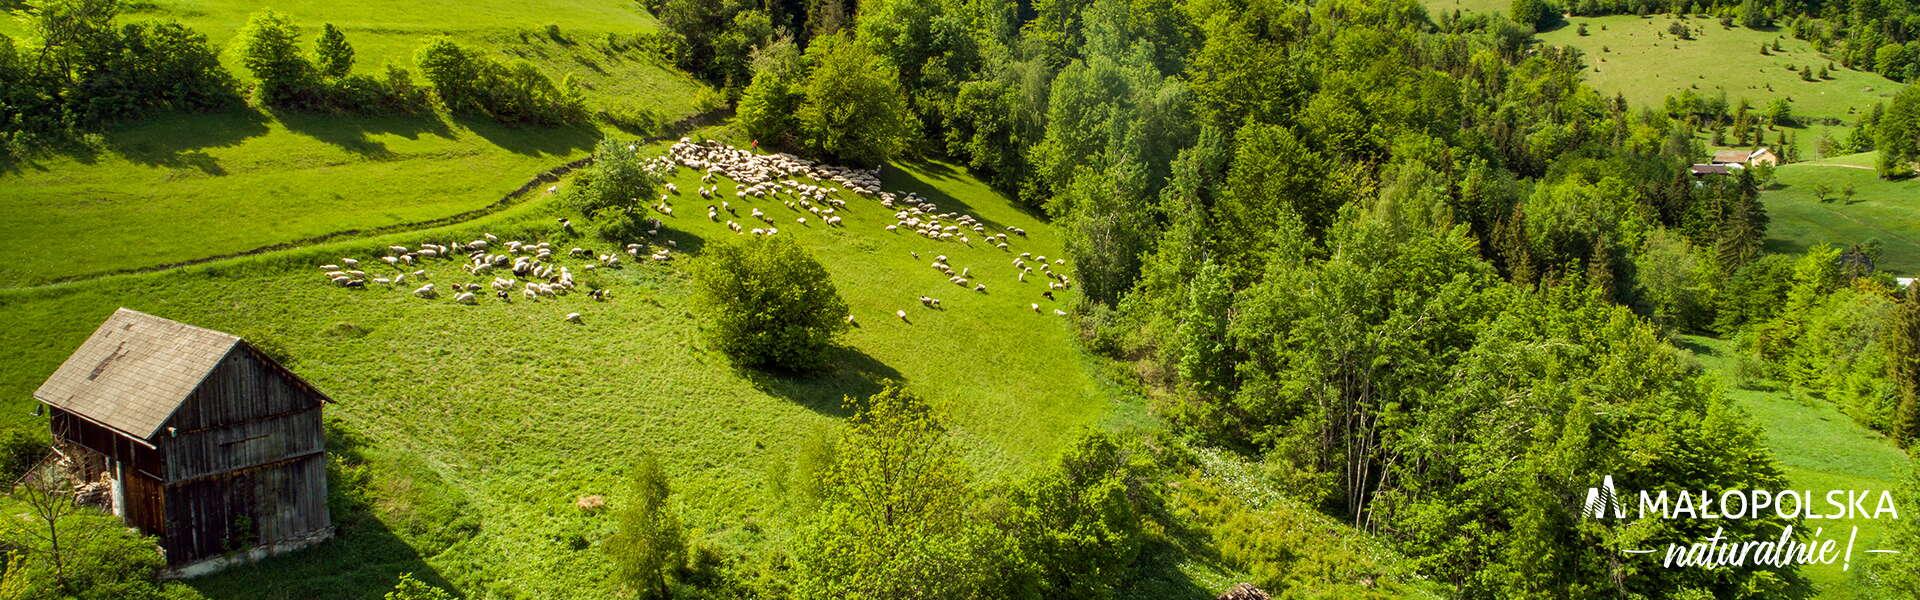 Zdjęcie łąki z owcami, w prawym dolnym rogu logo - napis Małopolska naturalnie